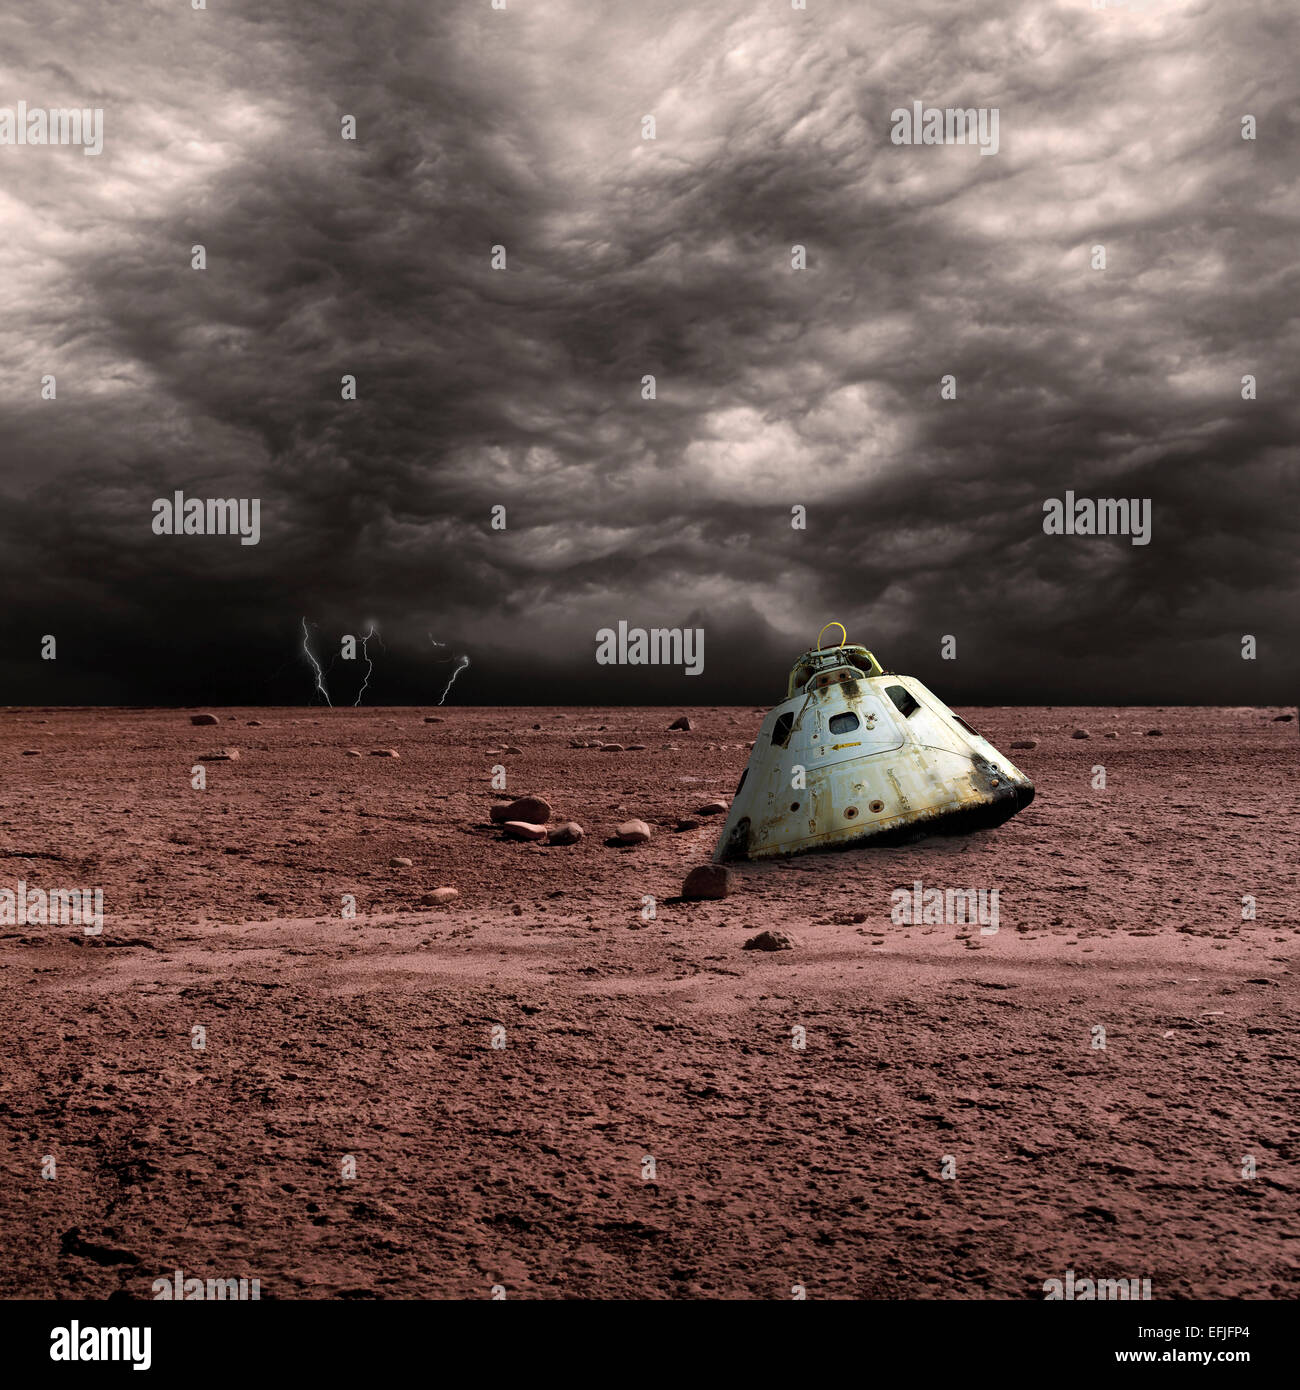 Une capsule spatiale brûlée se trouve abandonné sur un monde aride. Les nuages de tempête et d'éclairs sont à l'arrière-plan. Banque D'Images